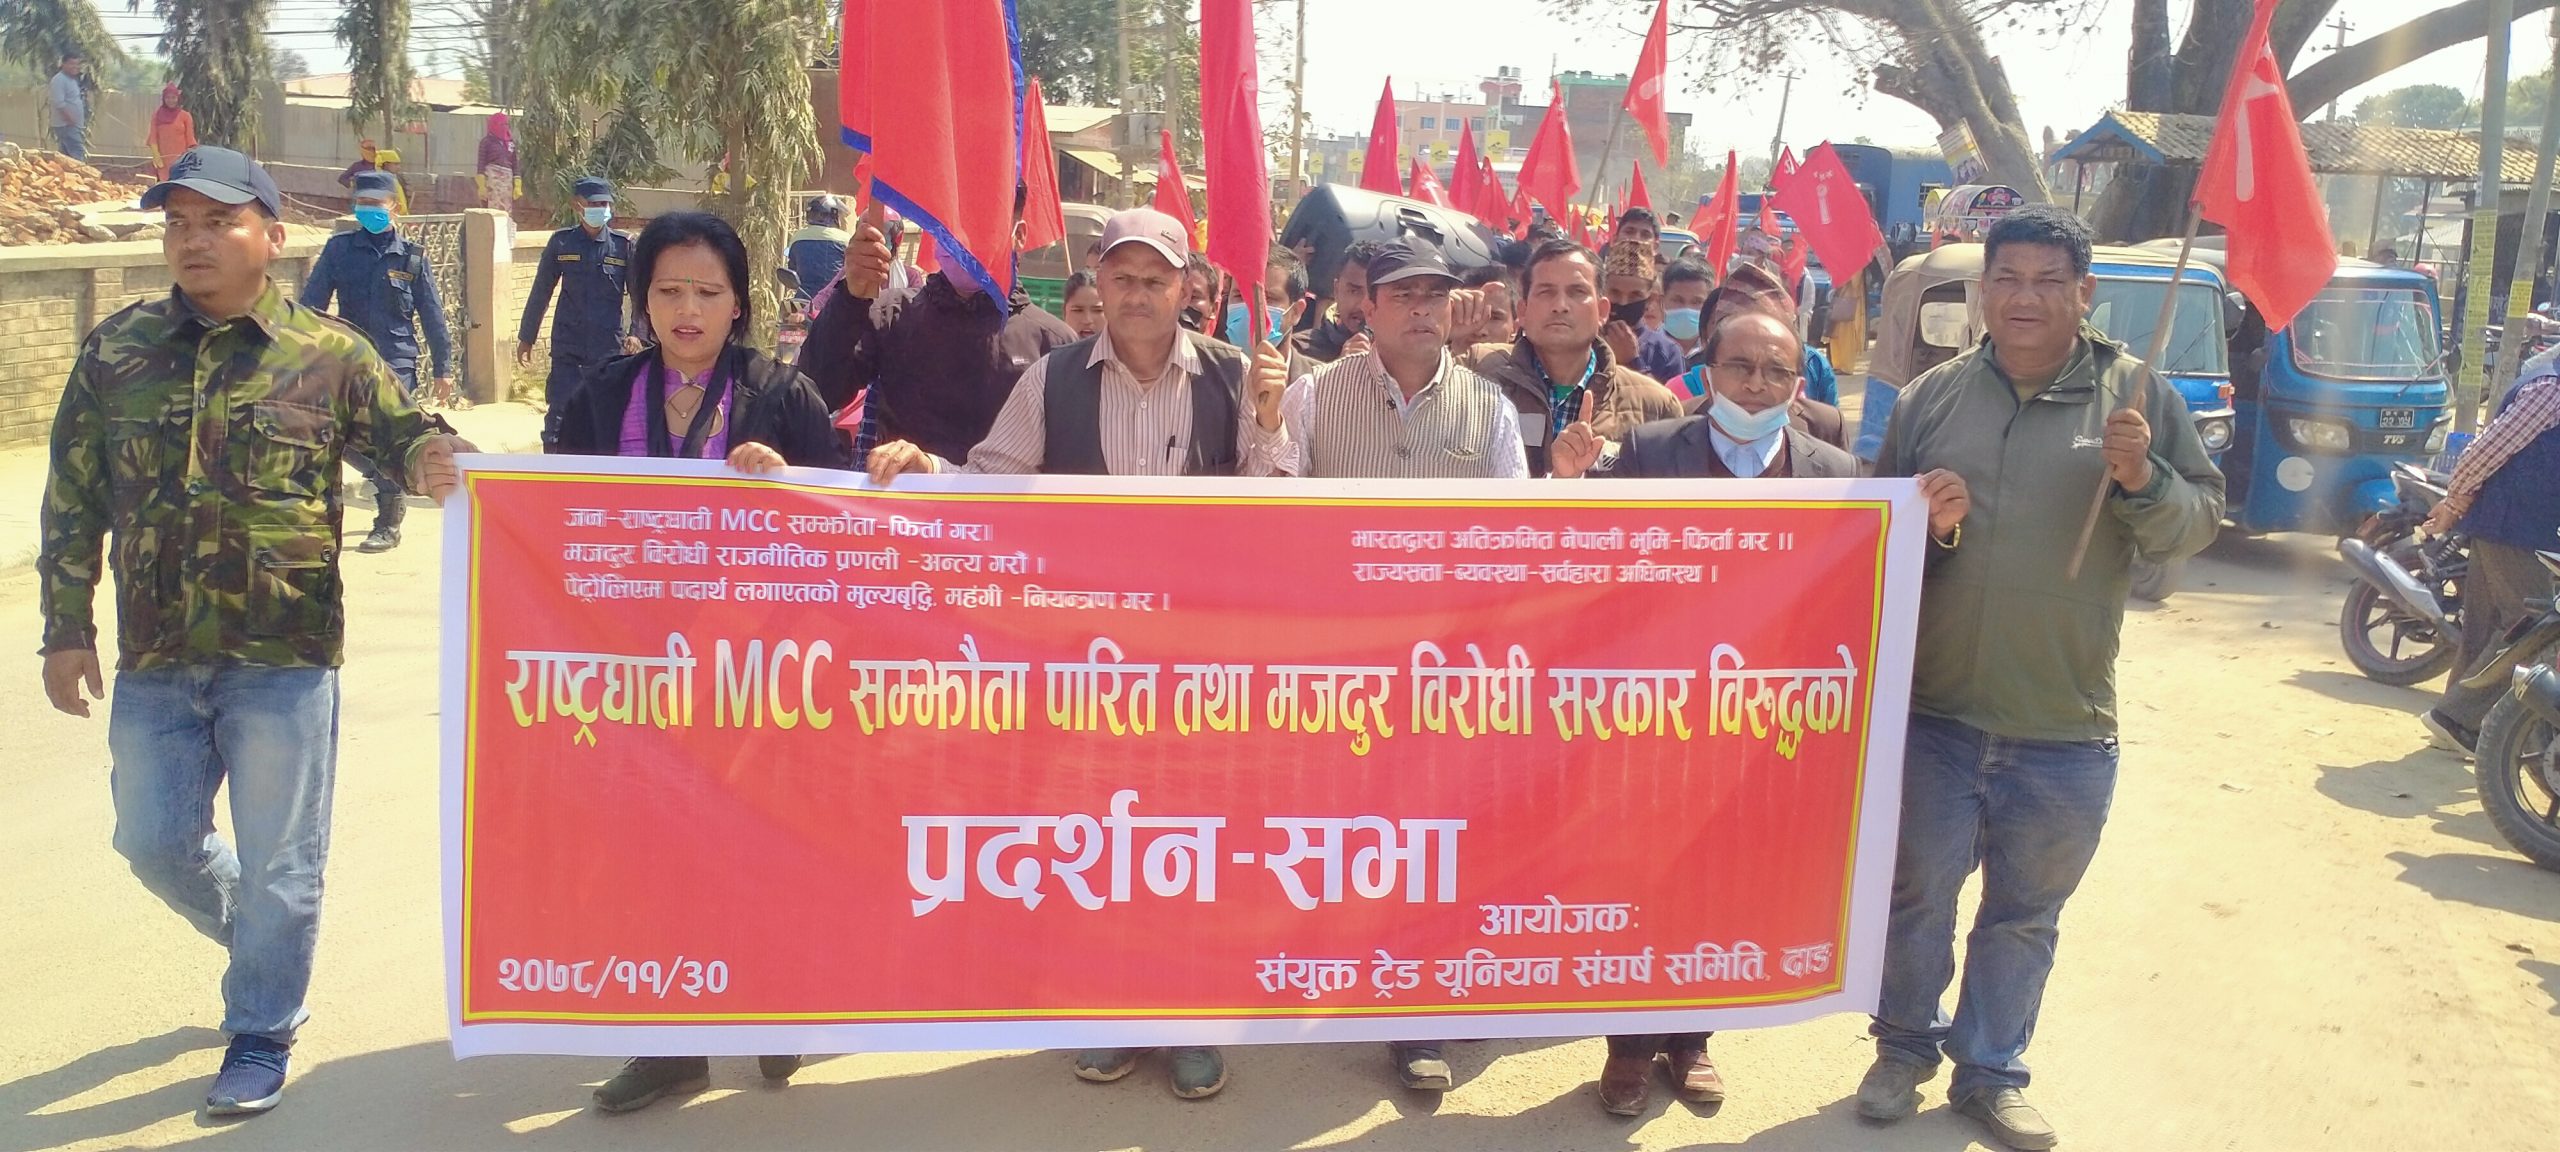 दाङमा राष्ट्रघाती एमसीसी पारित विरुद्ध क्रान्तिकारी ट्रेड युनियन महासंघद्वारा प्रदर्शन 